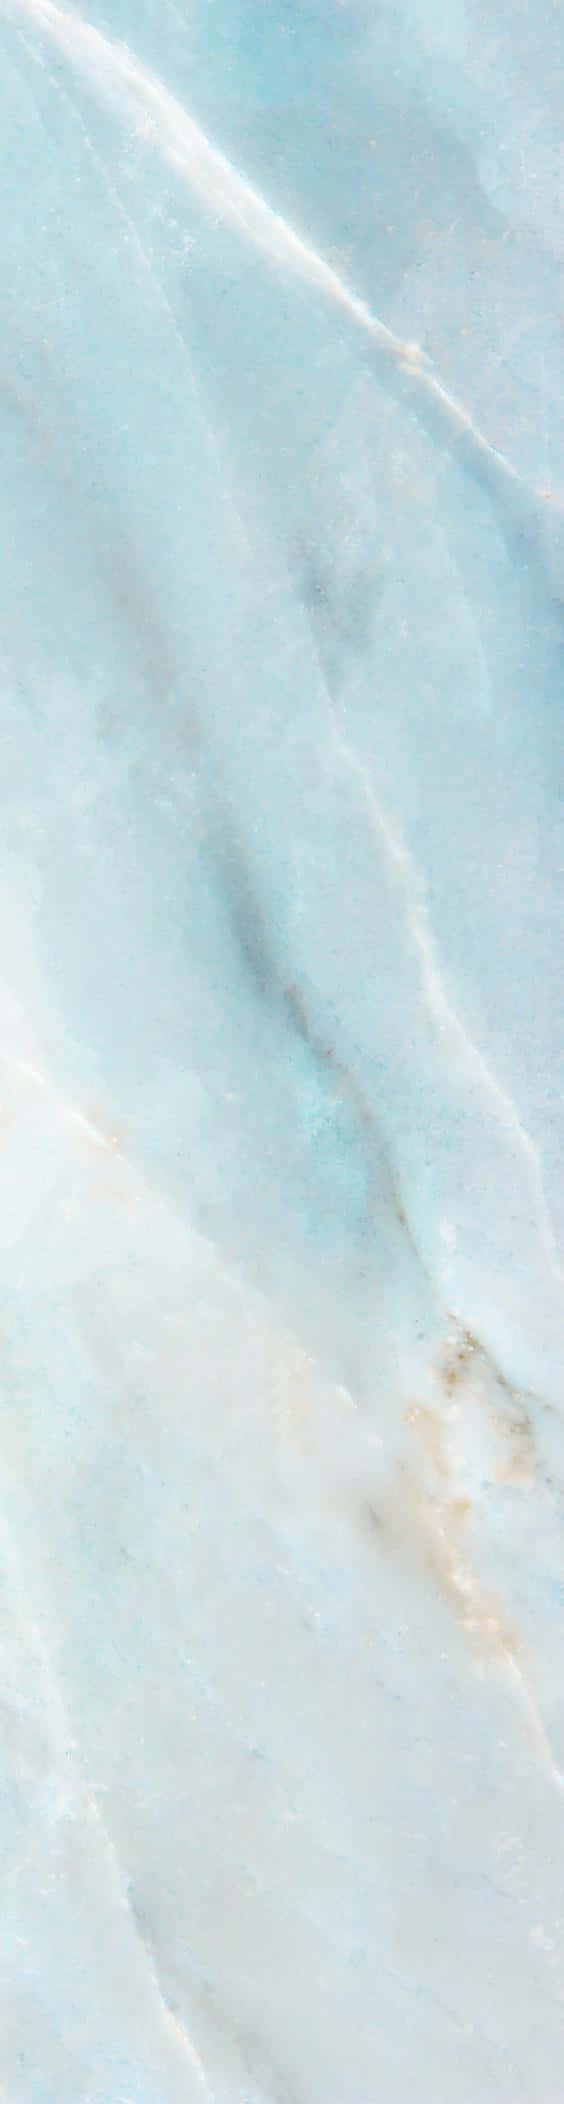 Etnærbillede Af En Overflade Med Blå Marmoreffekt. Wallpaper